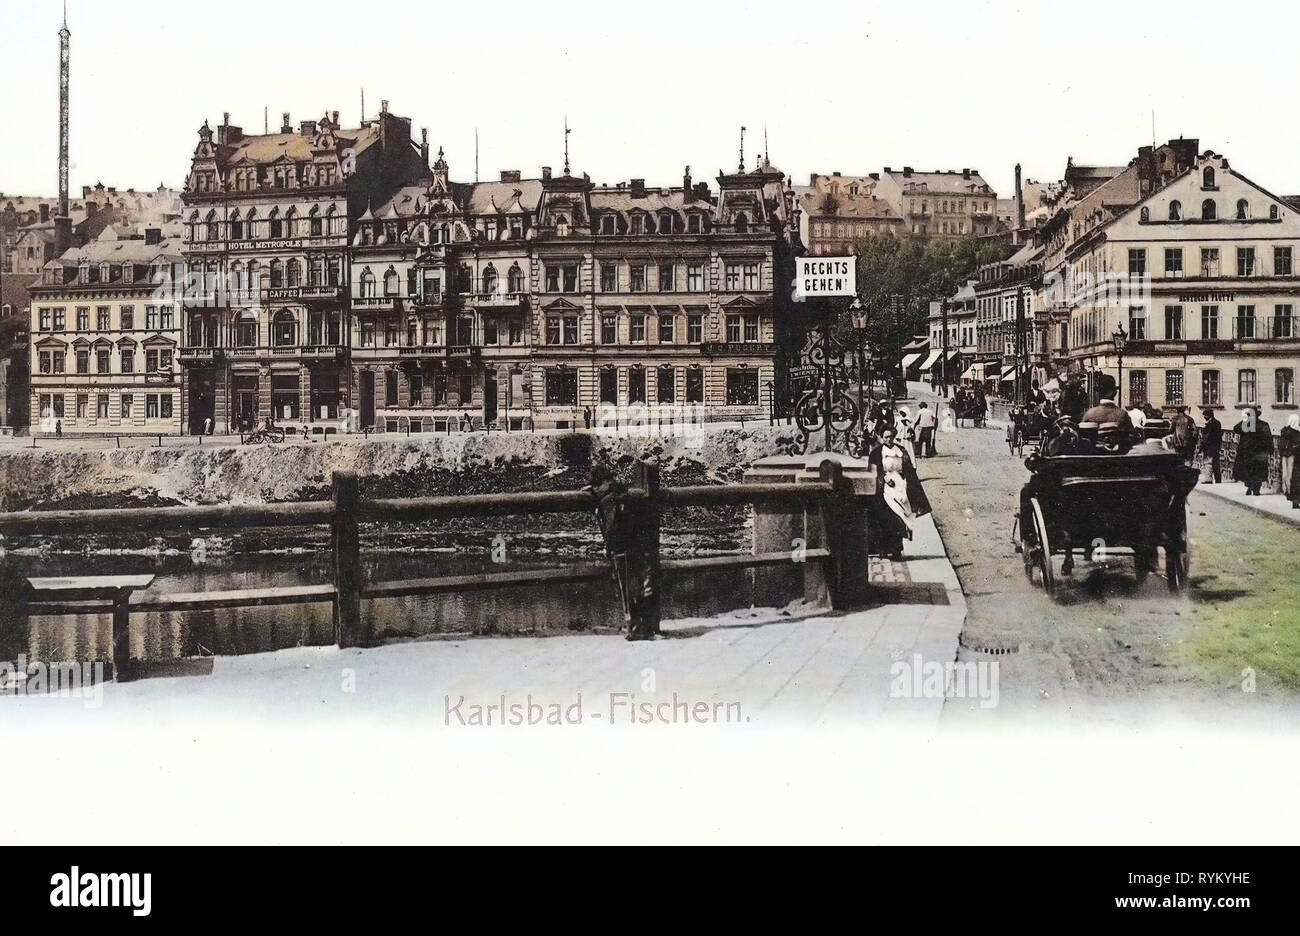 Kutschen in Karlsbad, die meisten Chebský, Gebäude in Karlovy Vary, 1902, Karlsbad, Karlsbad, Fischern, Straße mit Landauer, Tschechische Republik Stockfoto